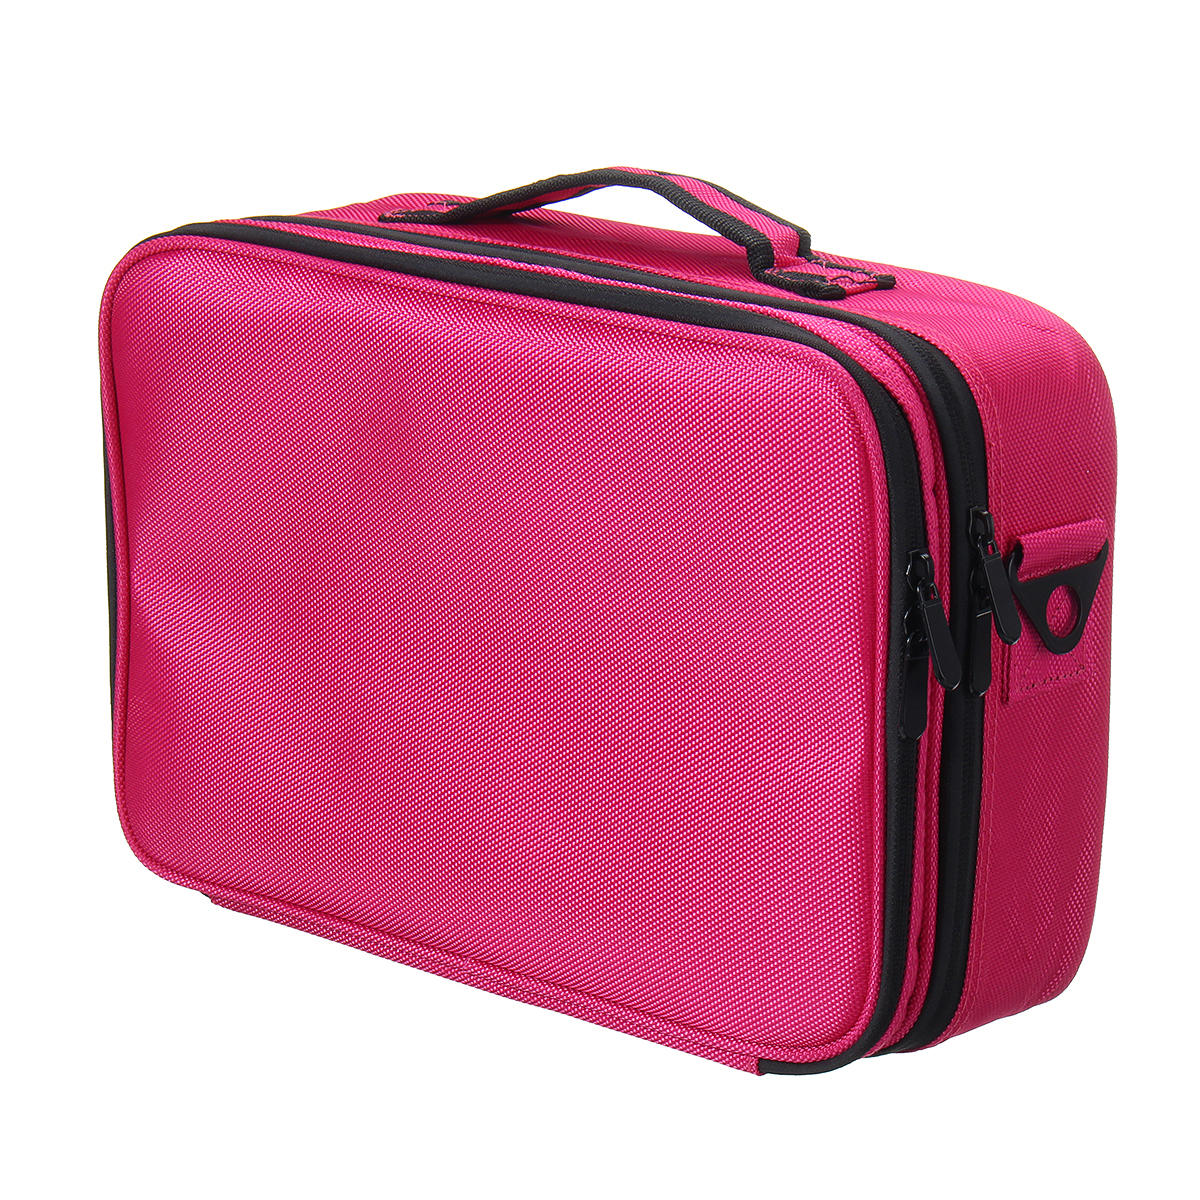 IPRee® 3 أحجام النساء أزياء أكسفورد حقيبة مستحضرات التجميل حقيبة سفر منظم المهنية المكياج مربع مستحضرات التجميل حقائب ال